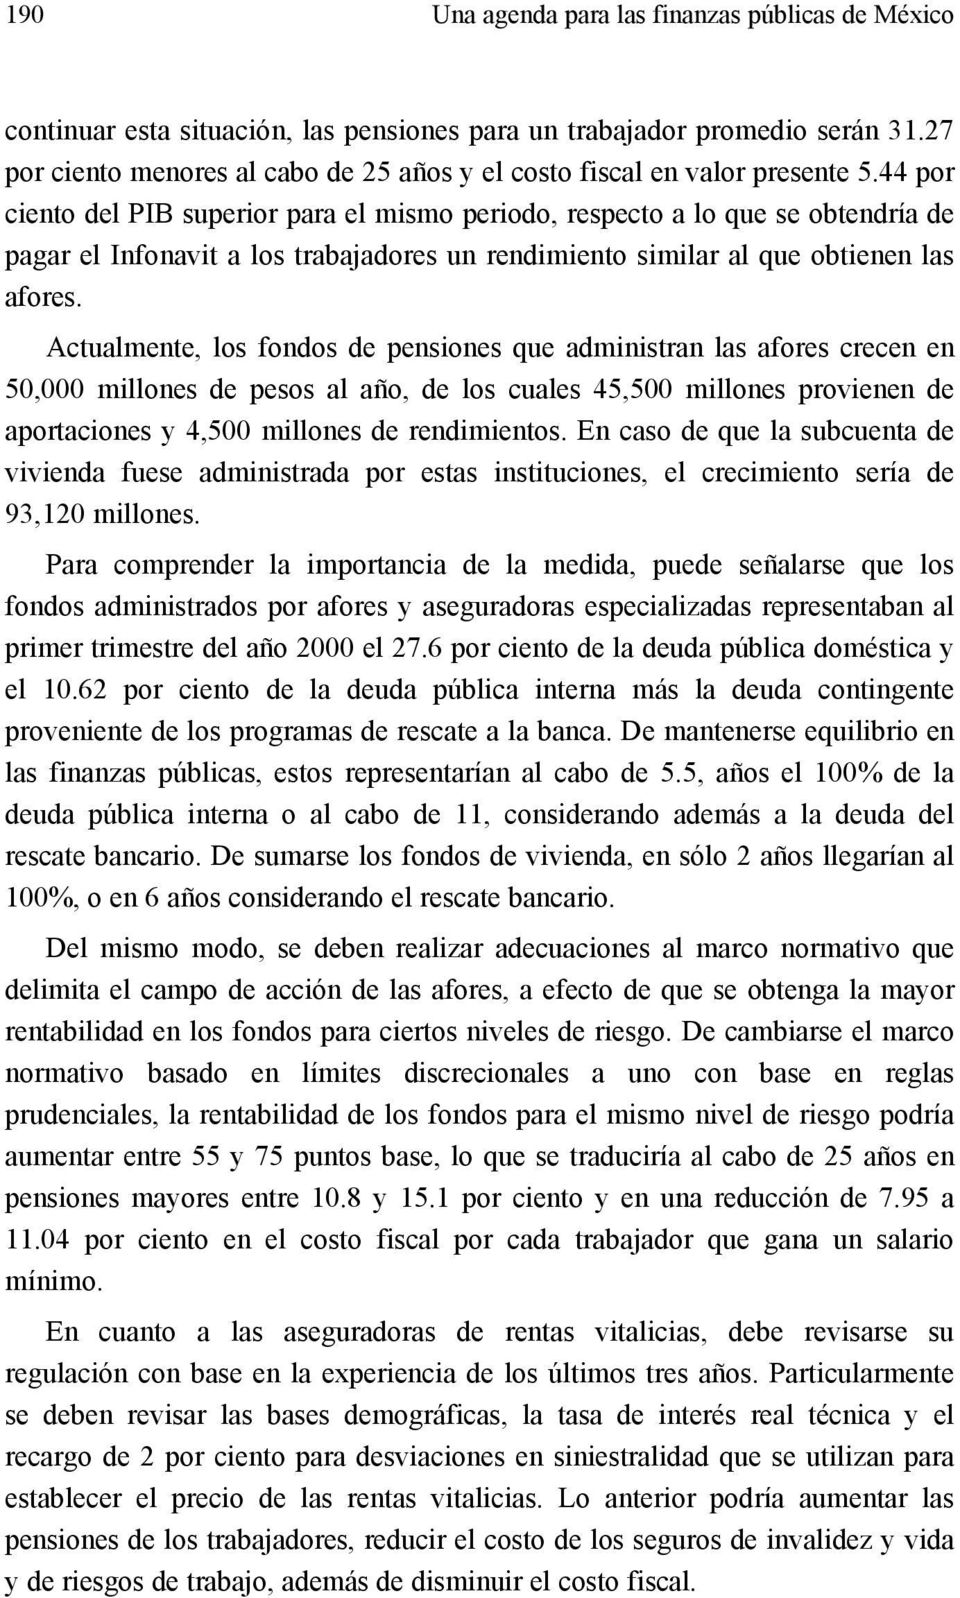 44 por ciento del PIB superior para el mismo periodo, respecto a lo que se obtendría de pagar el Infonavit a los trabajadores un rendimiento similar al que obtienen las afores.